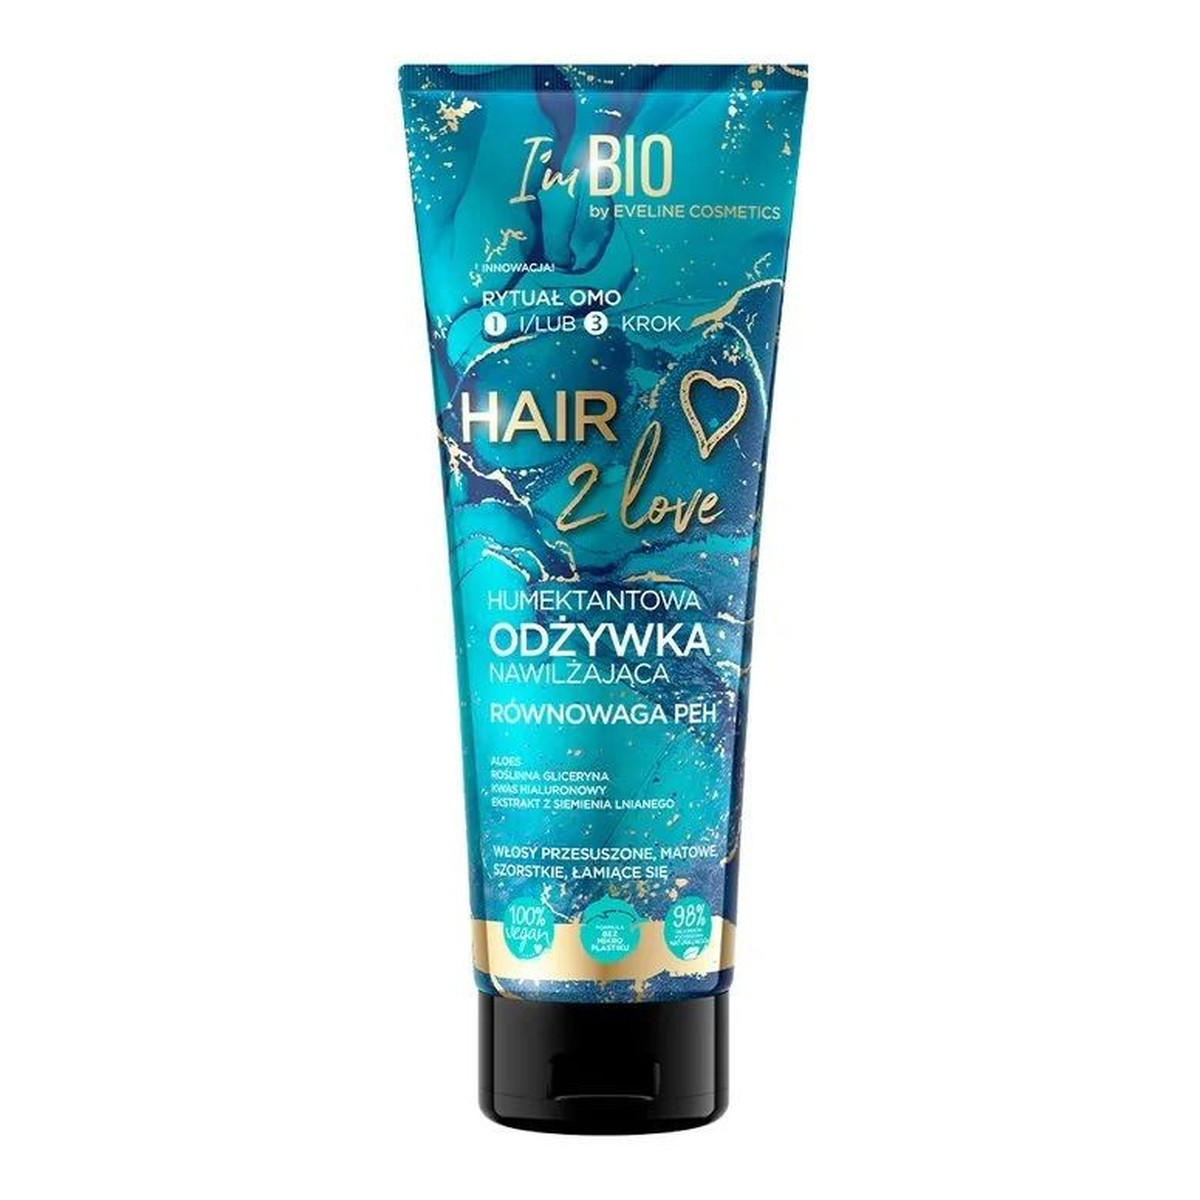 Eveline Hair 2 Love Humektantowa Odżywka nawilżająca do włosów 250ml